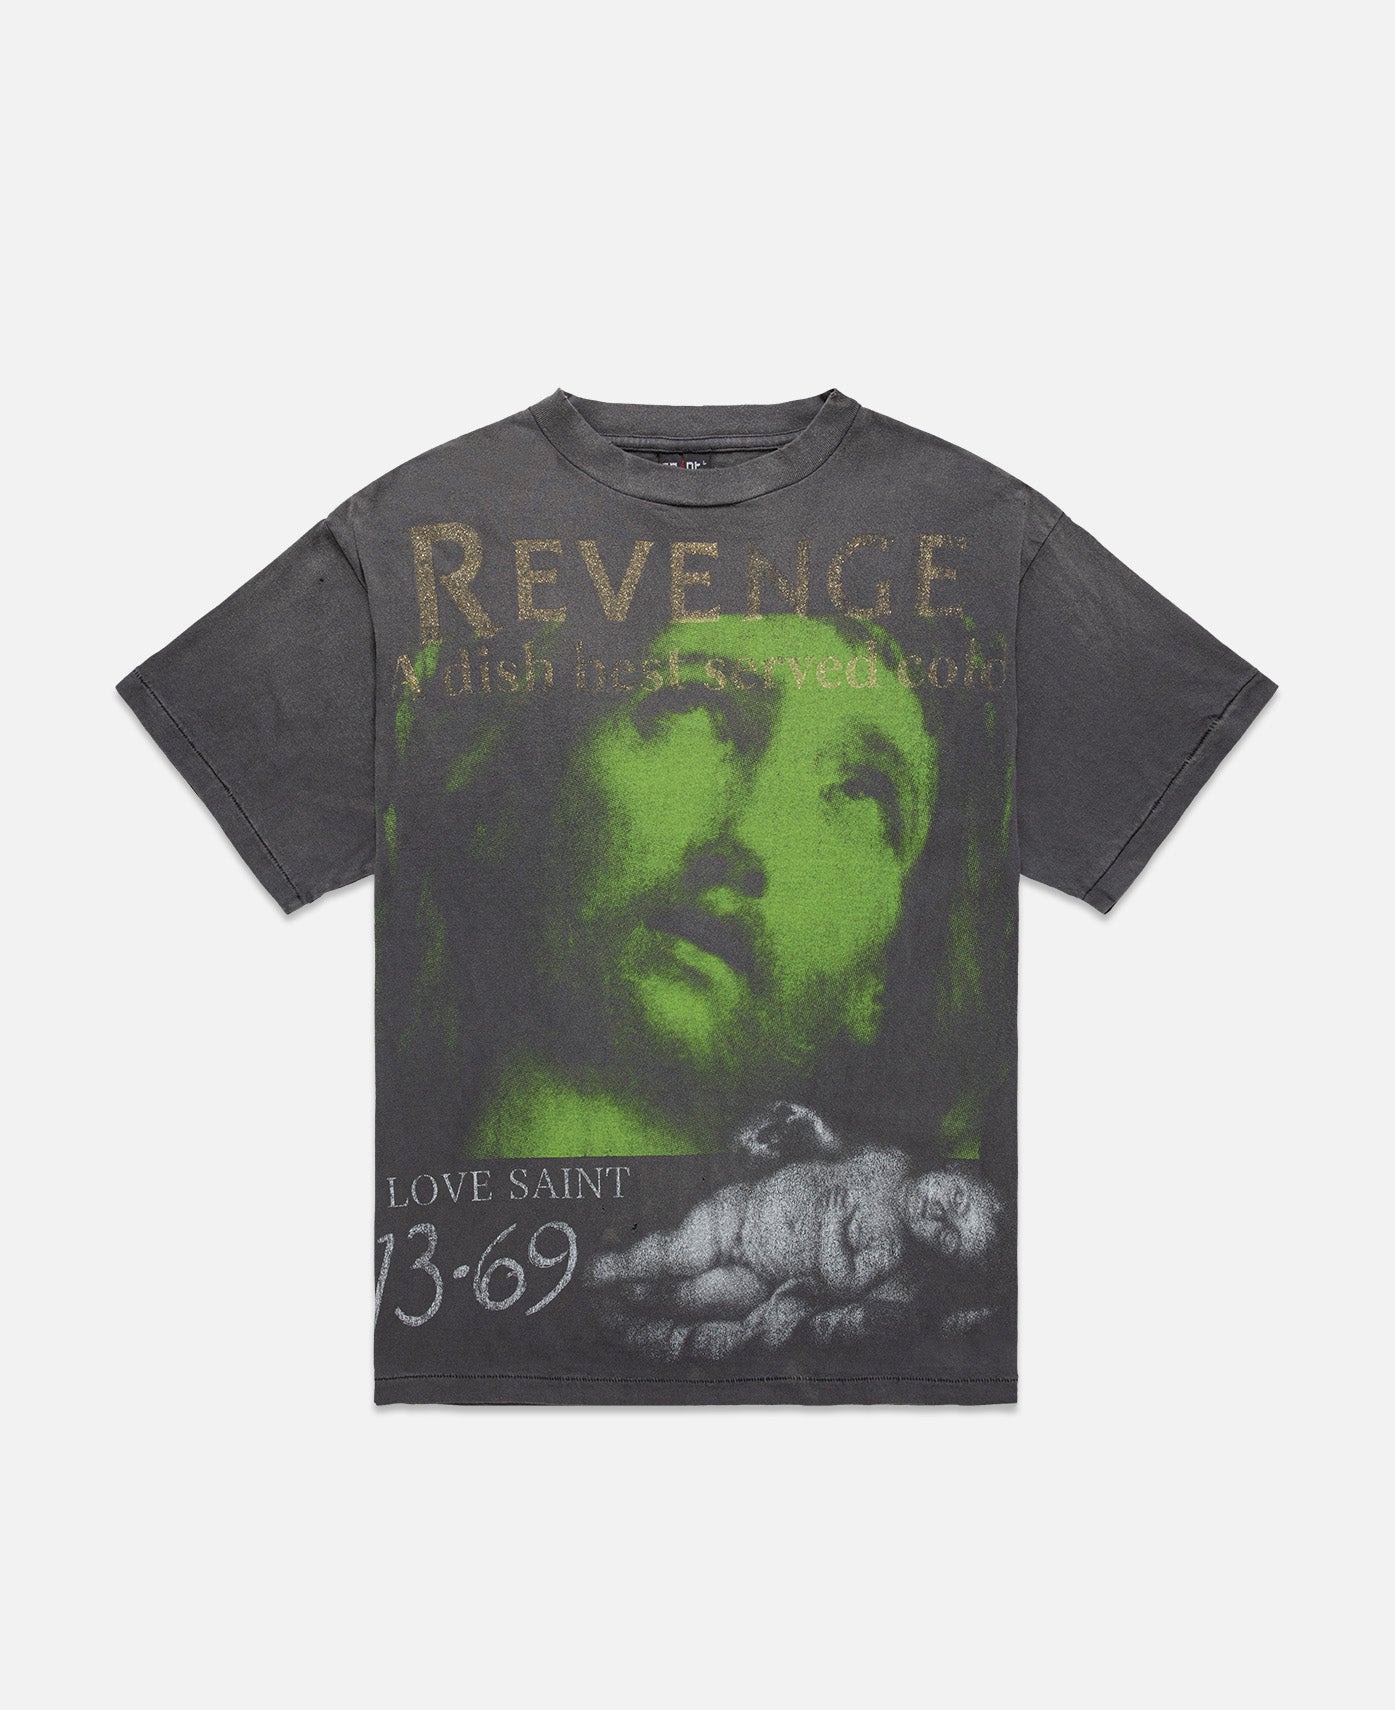 Revenge T-Shirt (Black)